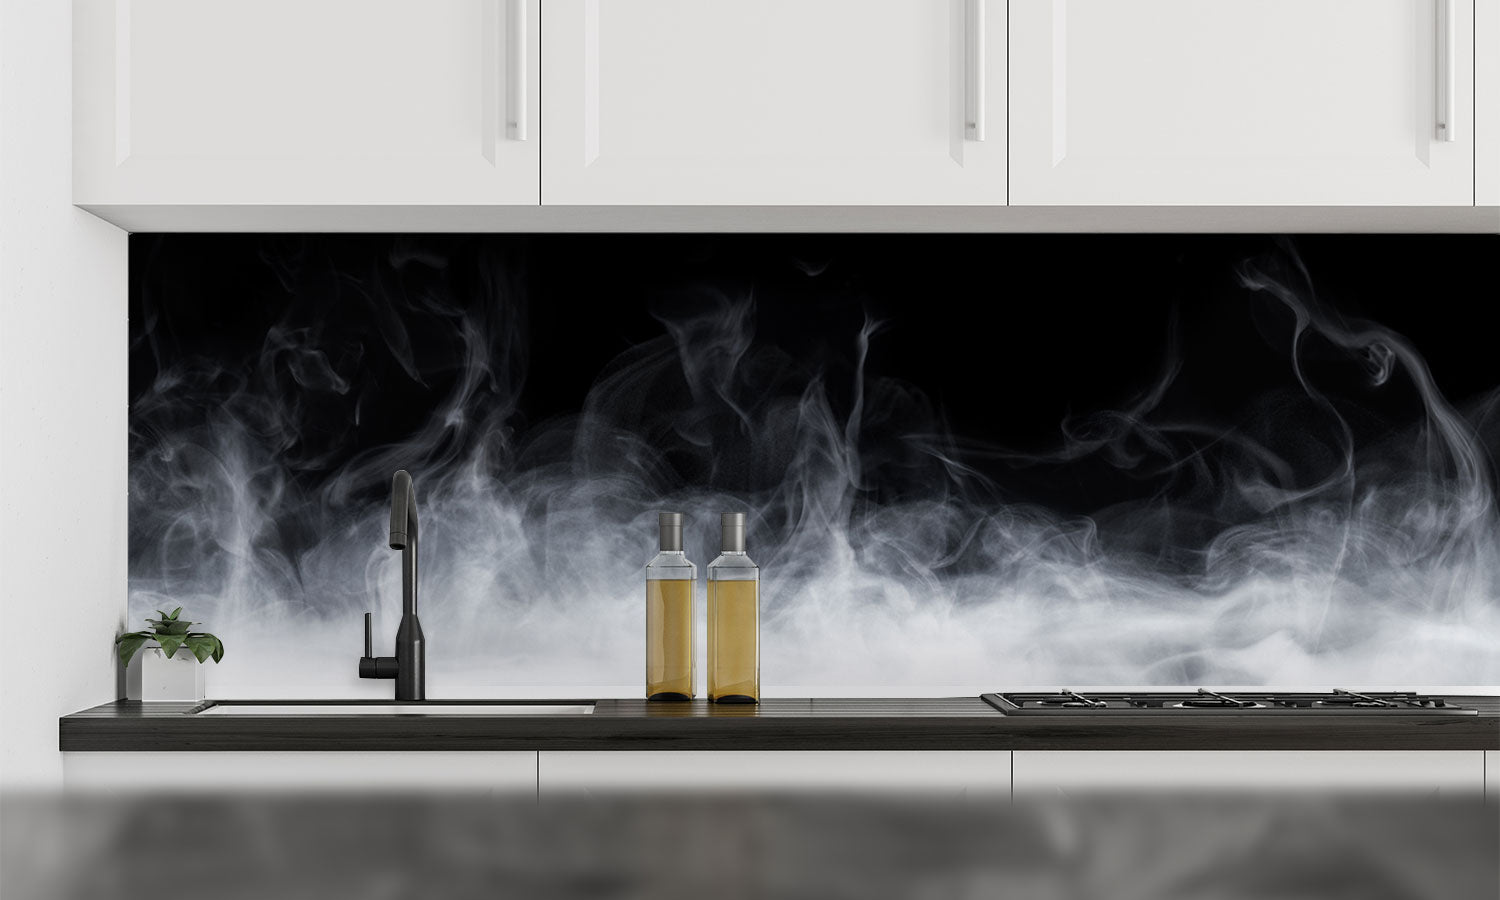 Kuhinjski paneli   Abstract Smoke - Stekleni / PVC plošče / Pleksi steklo - s tiskom za kuhinjo, Stenske obloge PKU049 - Life-decor.si